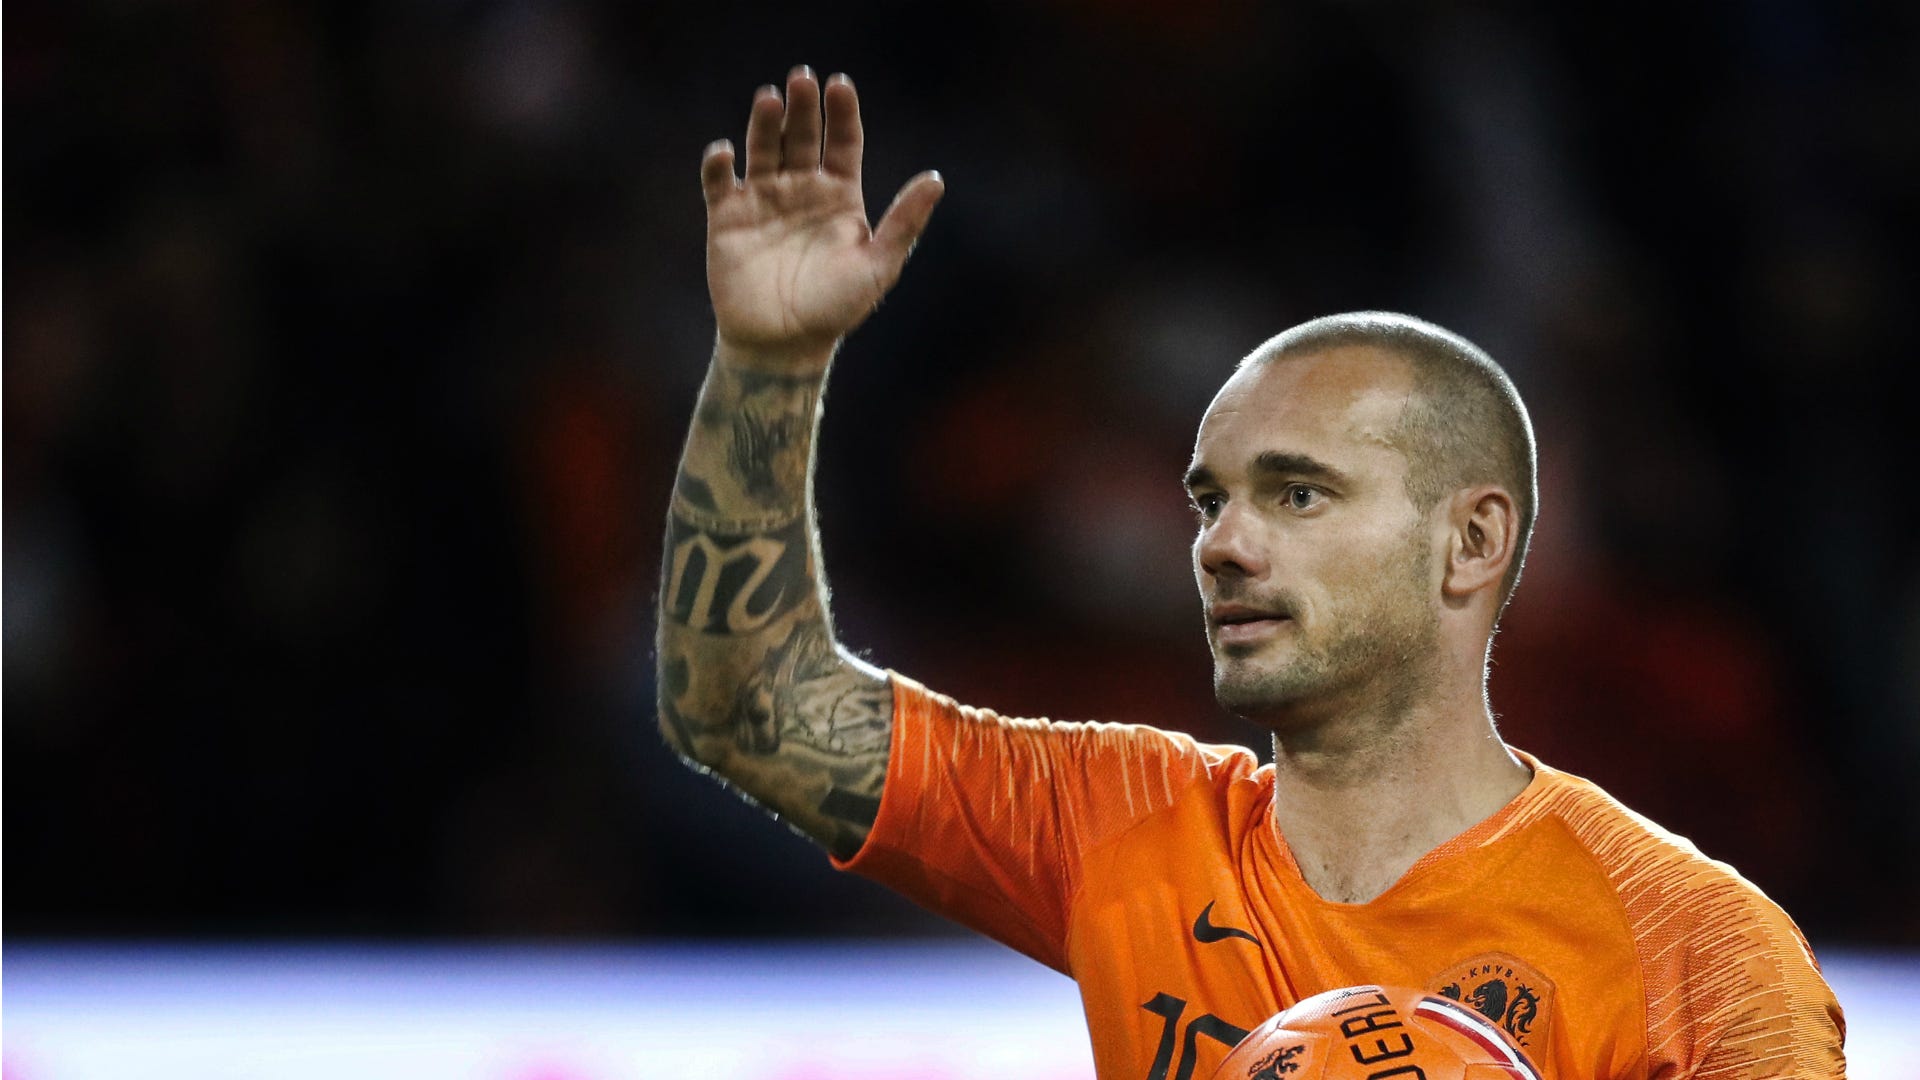 La confessione di Sneijder: "Al Real la vodka era la mia migliore amica" |  Goal.com Italia